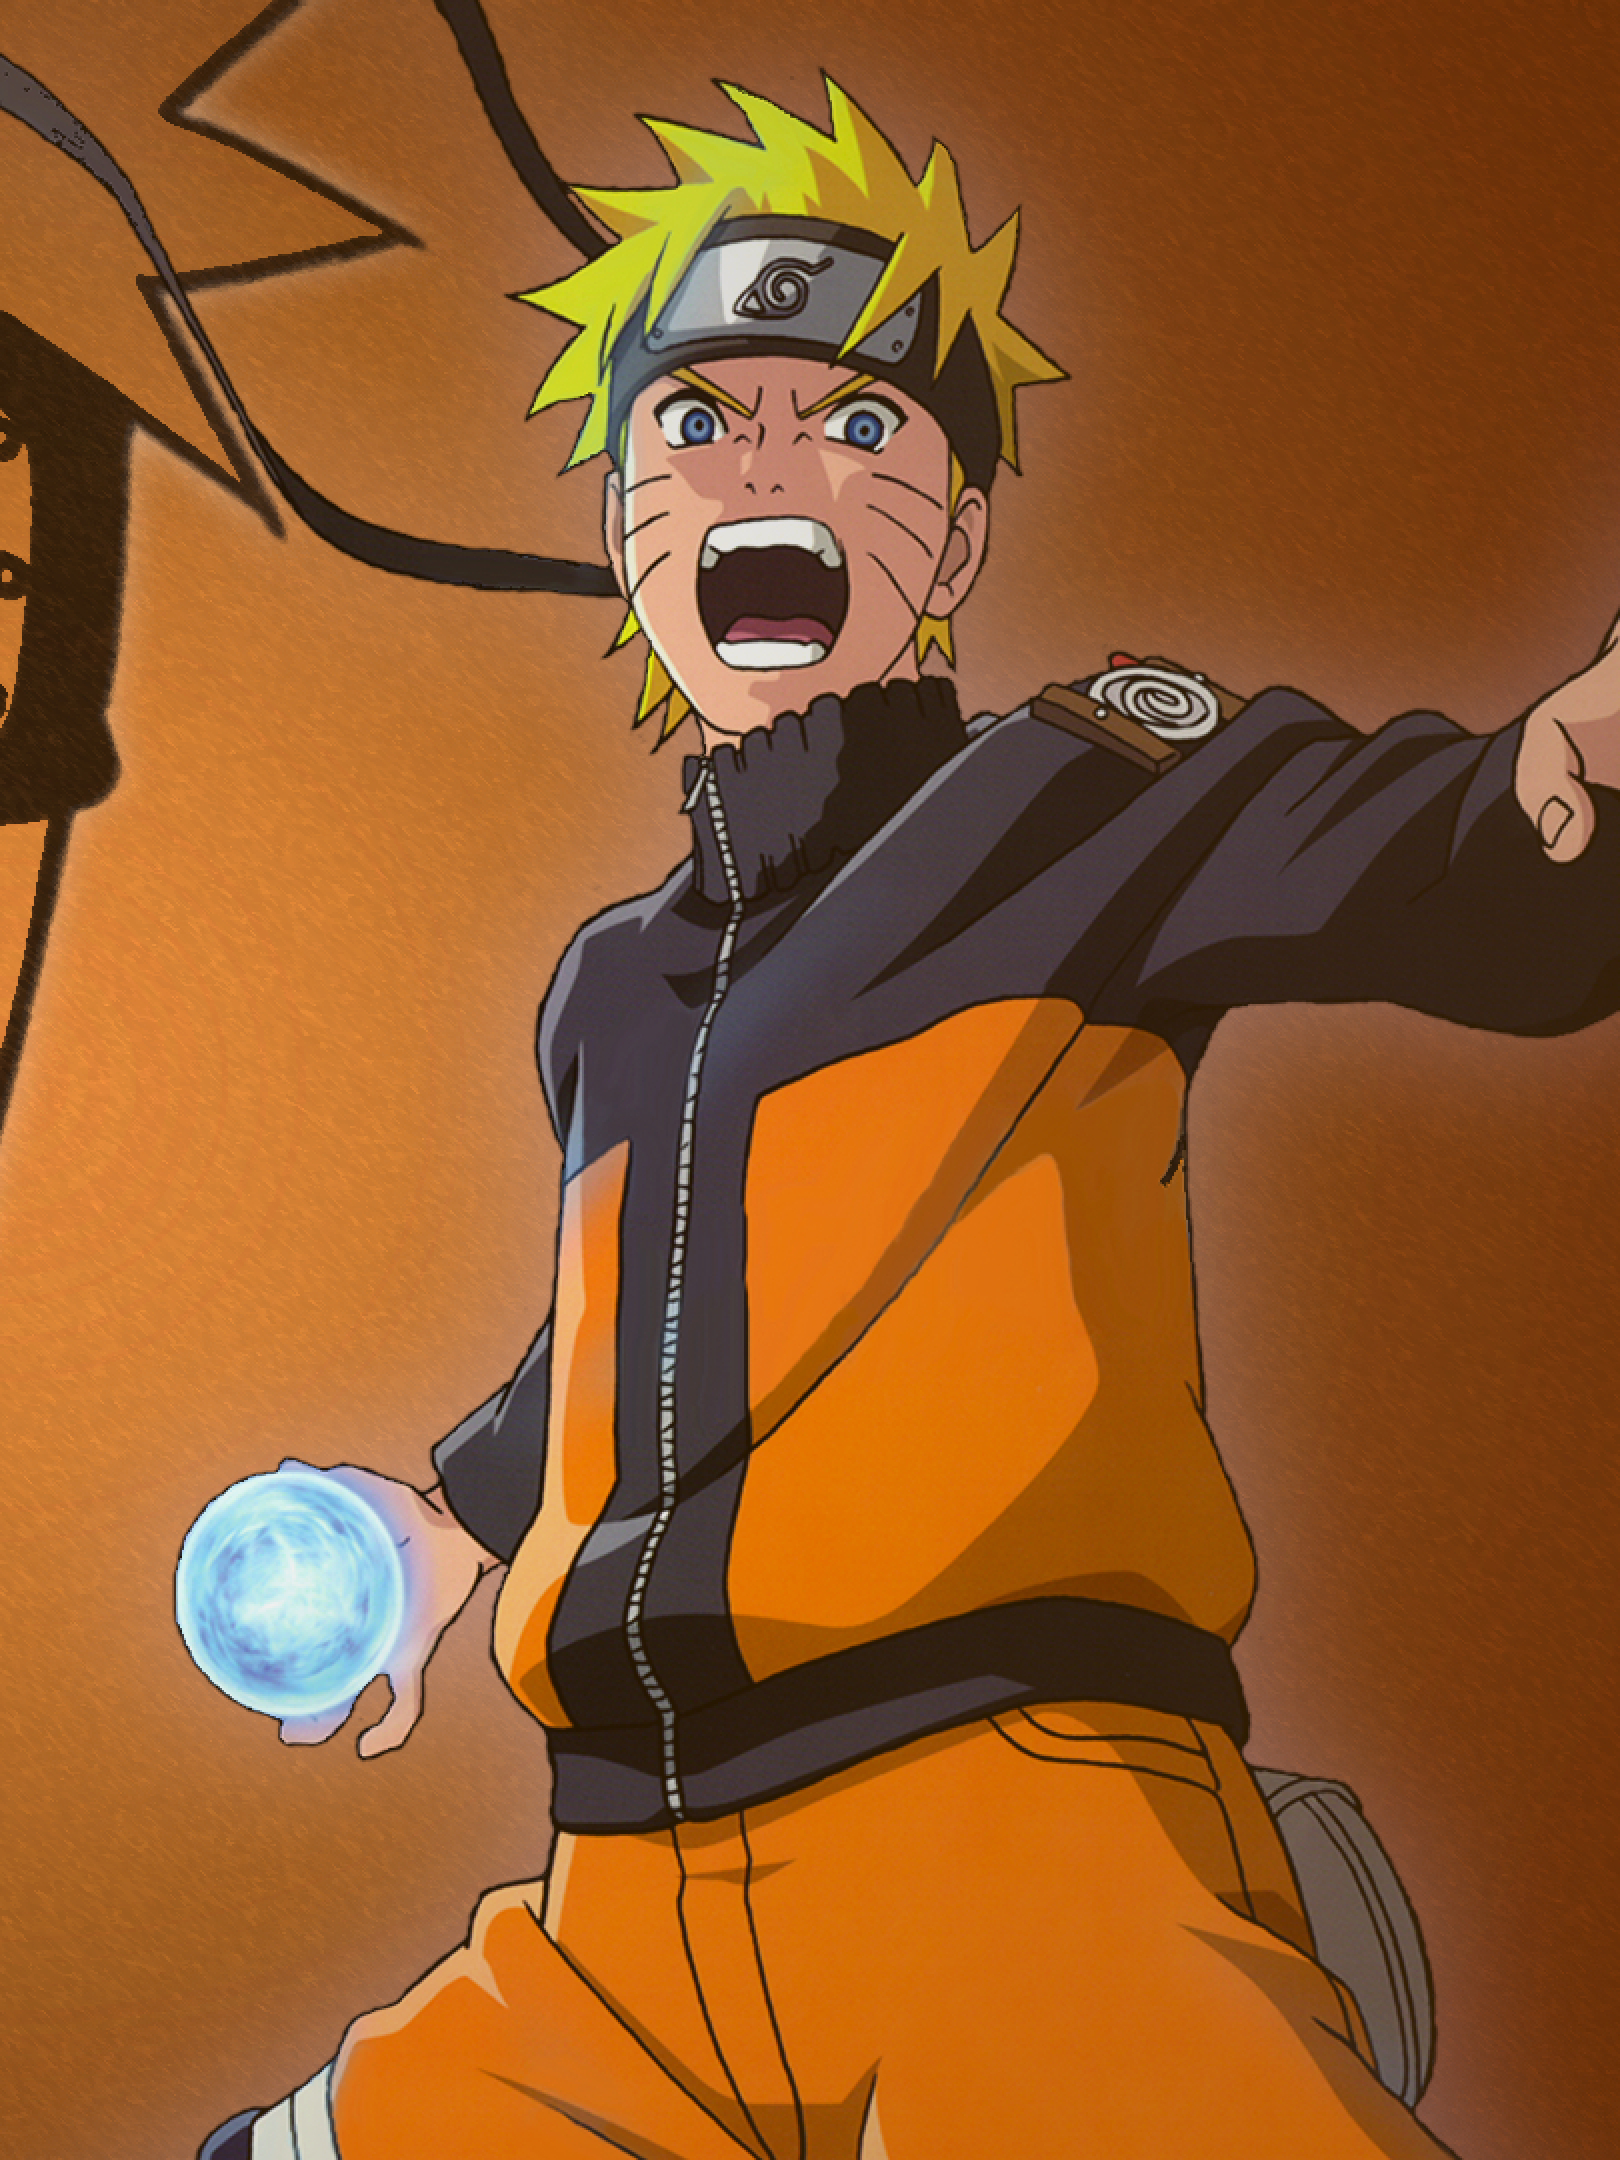 Naruto Rasengan Wallpaper Hd Anime Wallpaper Hd Images And Photos ...